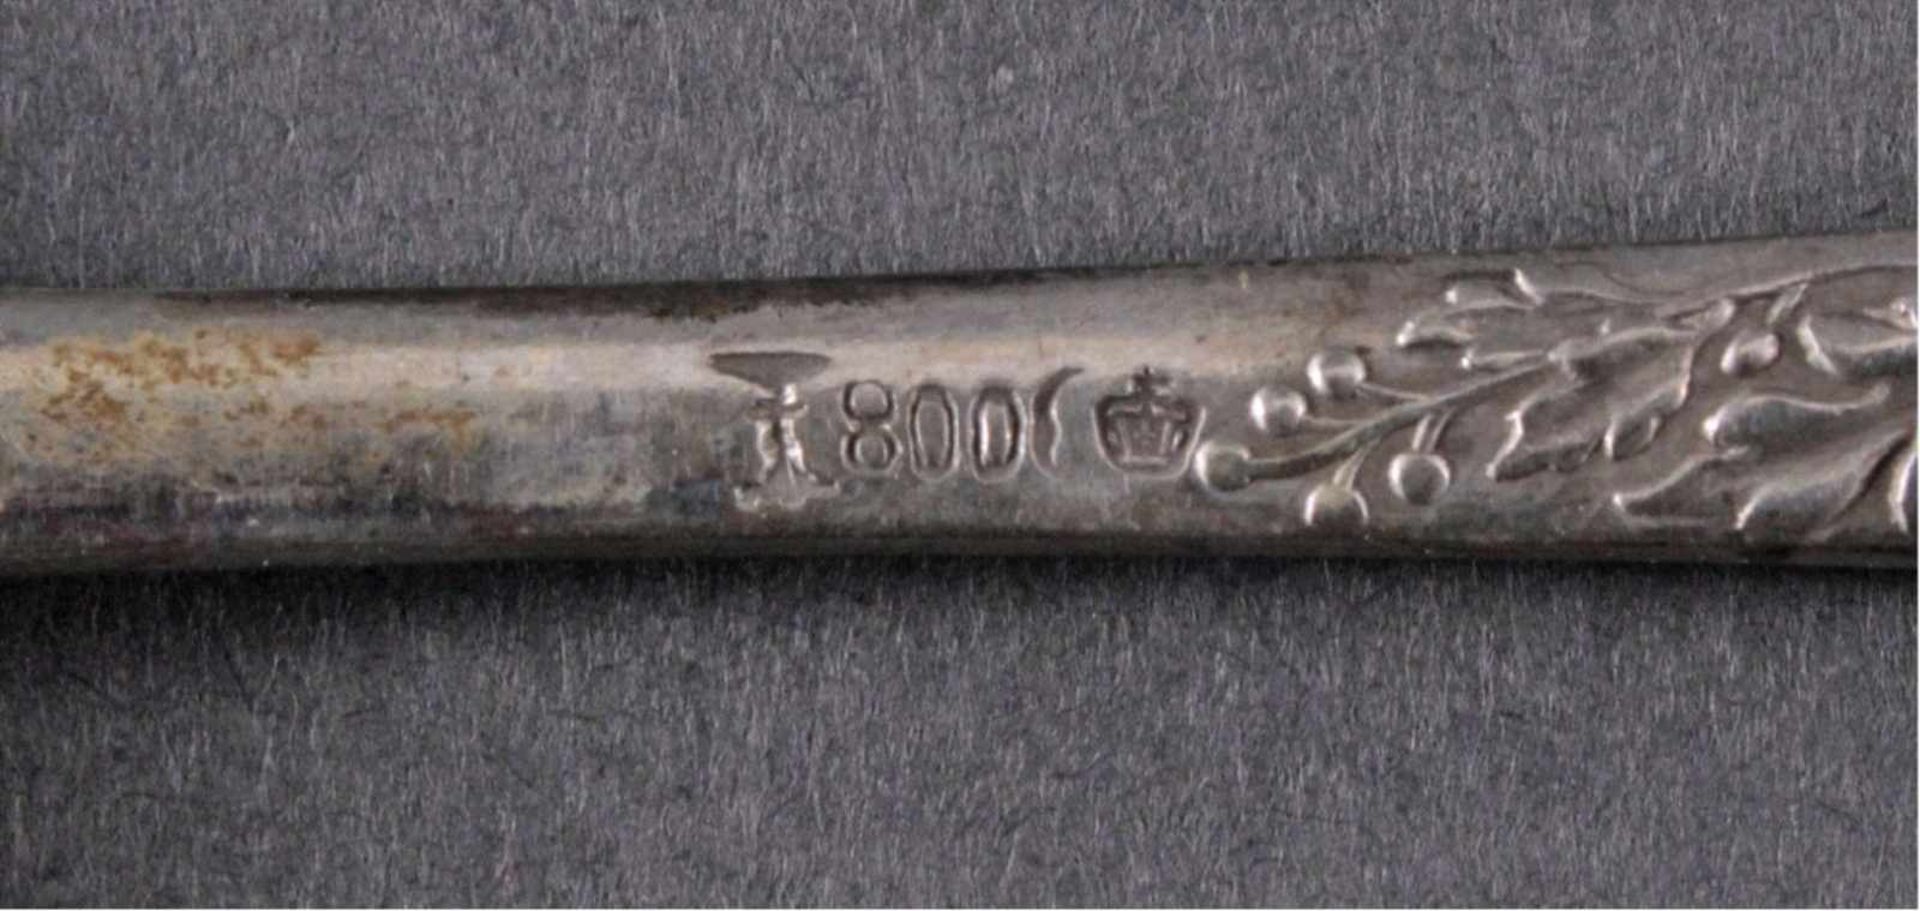 14 Gabeln 800er Silber in SchatulleFloral reliefierte Gabeln, punziert 800 Sichel und Krone, - Image 5 of 6